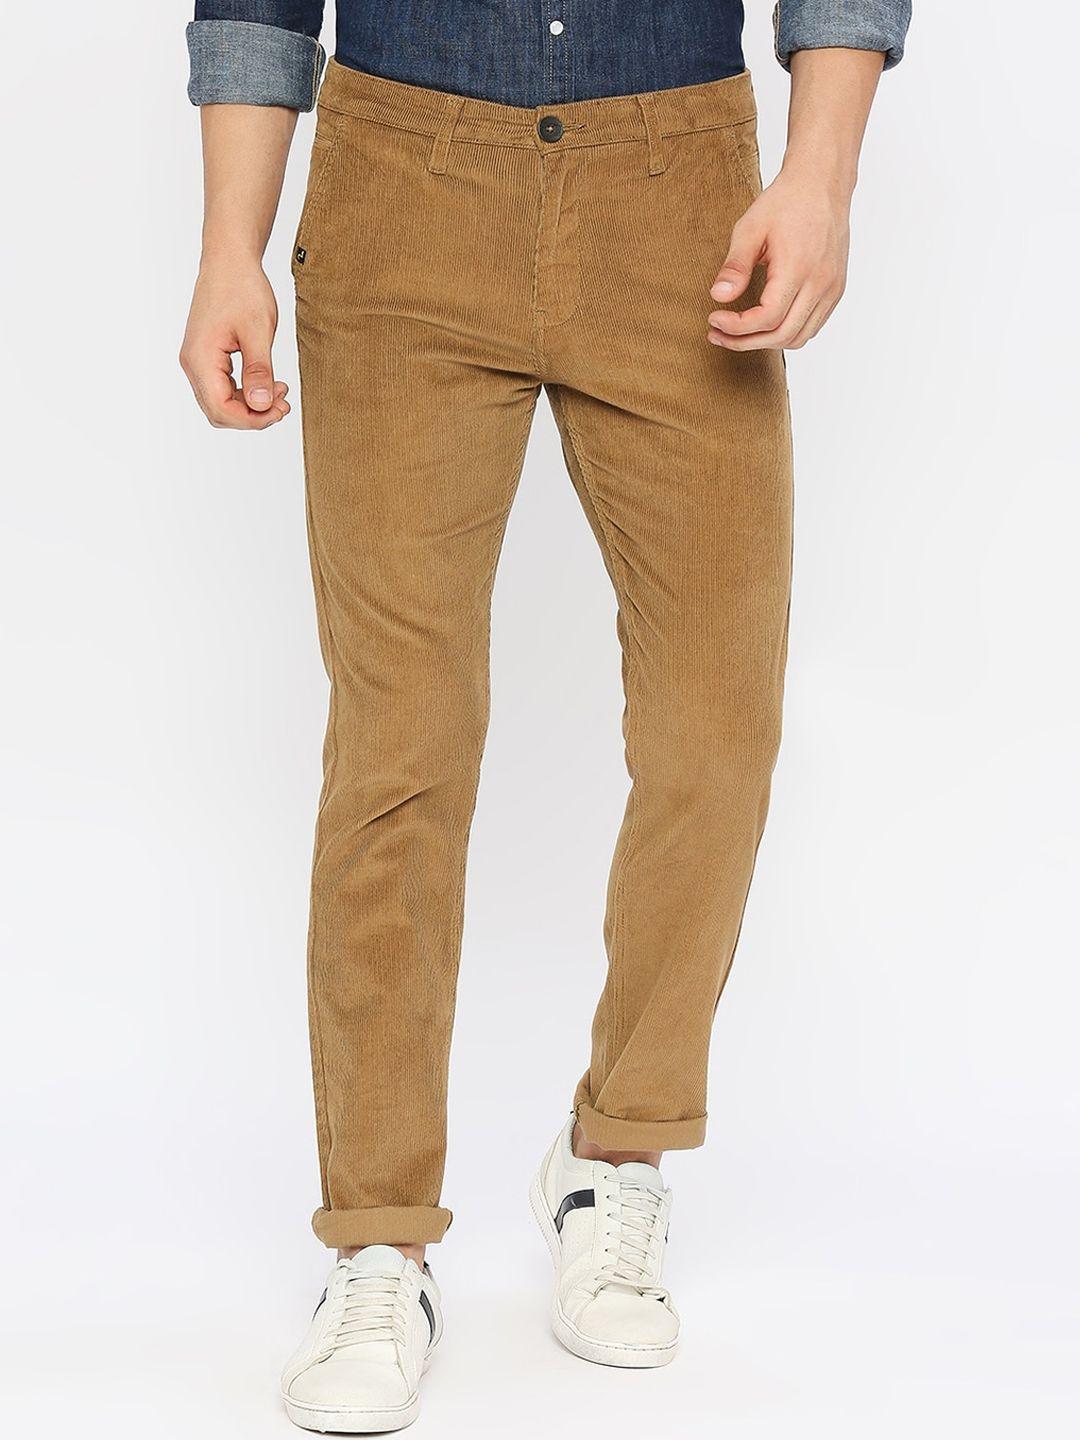 spykar-men-mid-rise-slim-fit-cotton-trousers